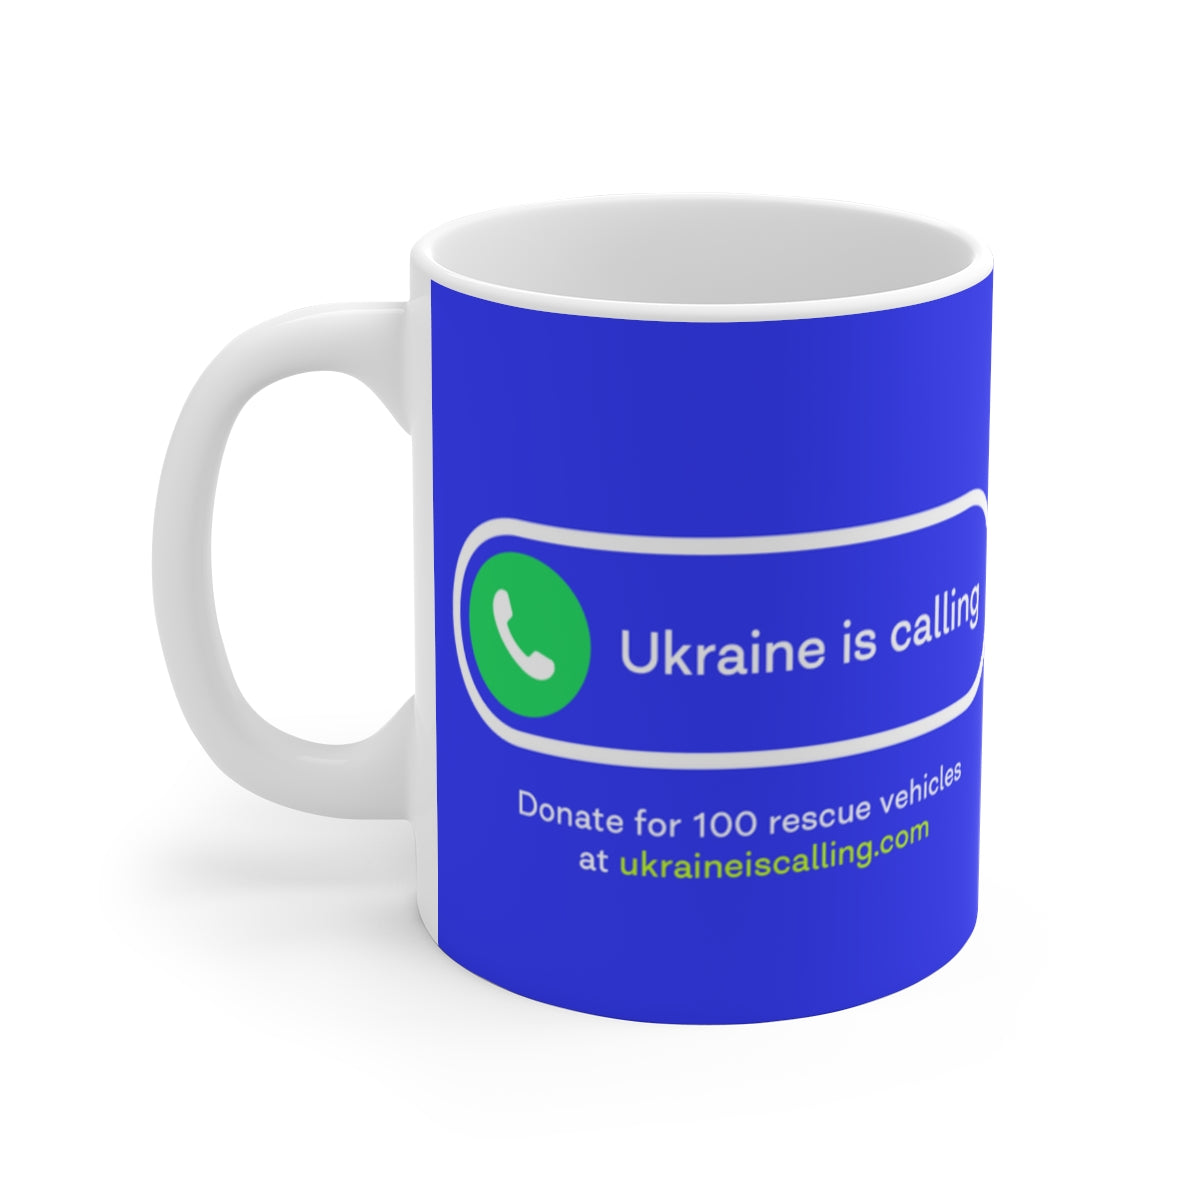 乌克兰的呼唤——陶瓷杯